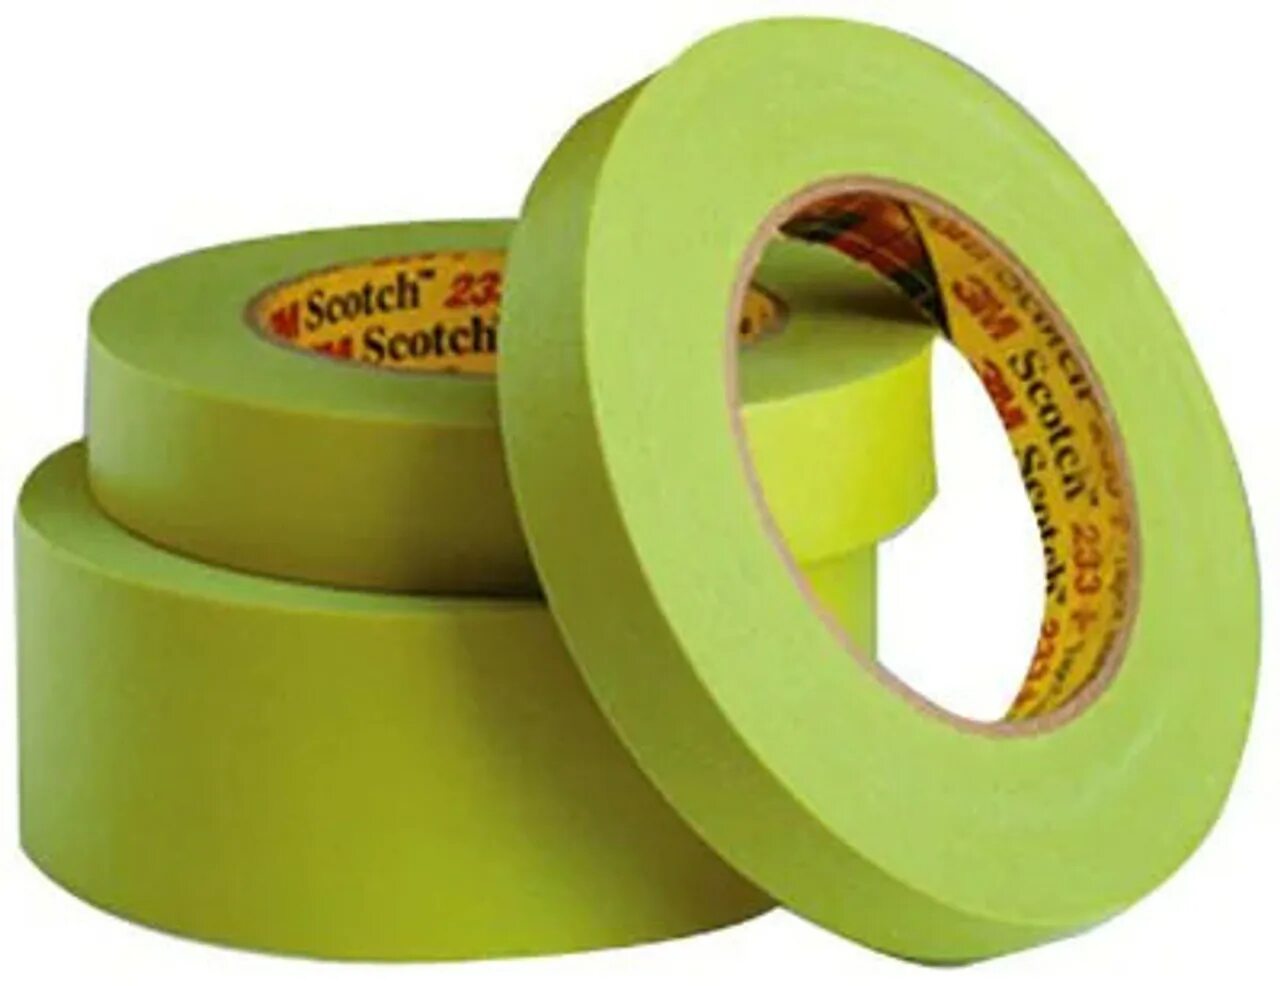 Скотч Masking Tape 55m. HOLEX скотч 36мм*50 м зелёный. 3m8x1000r скотч. Скотч малярный 36mm.